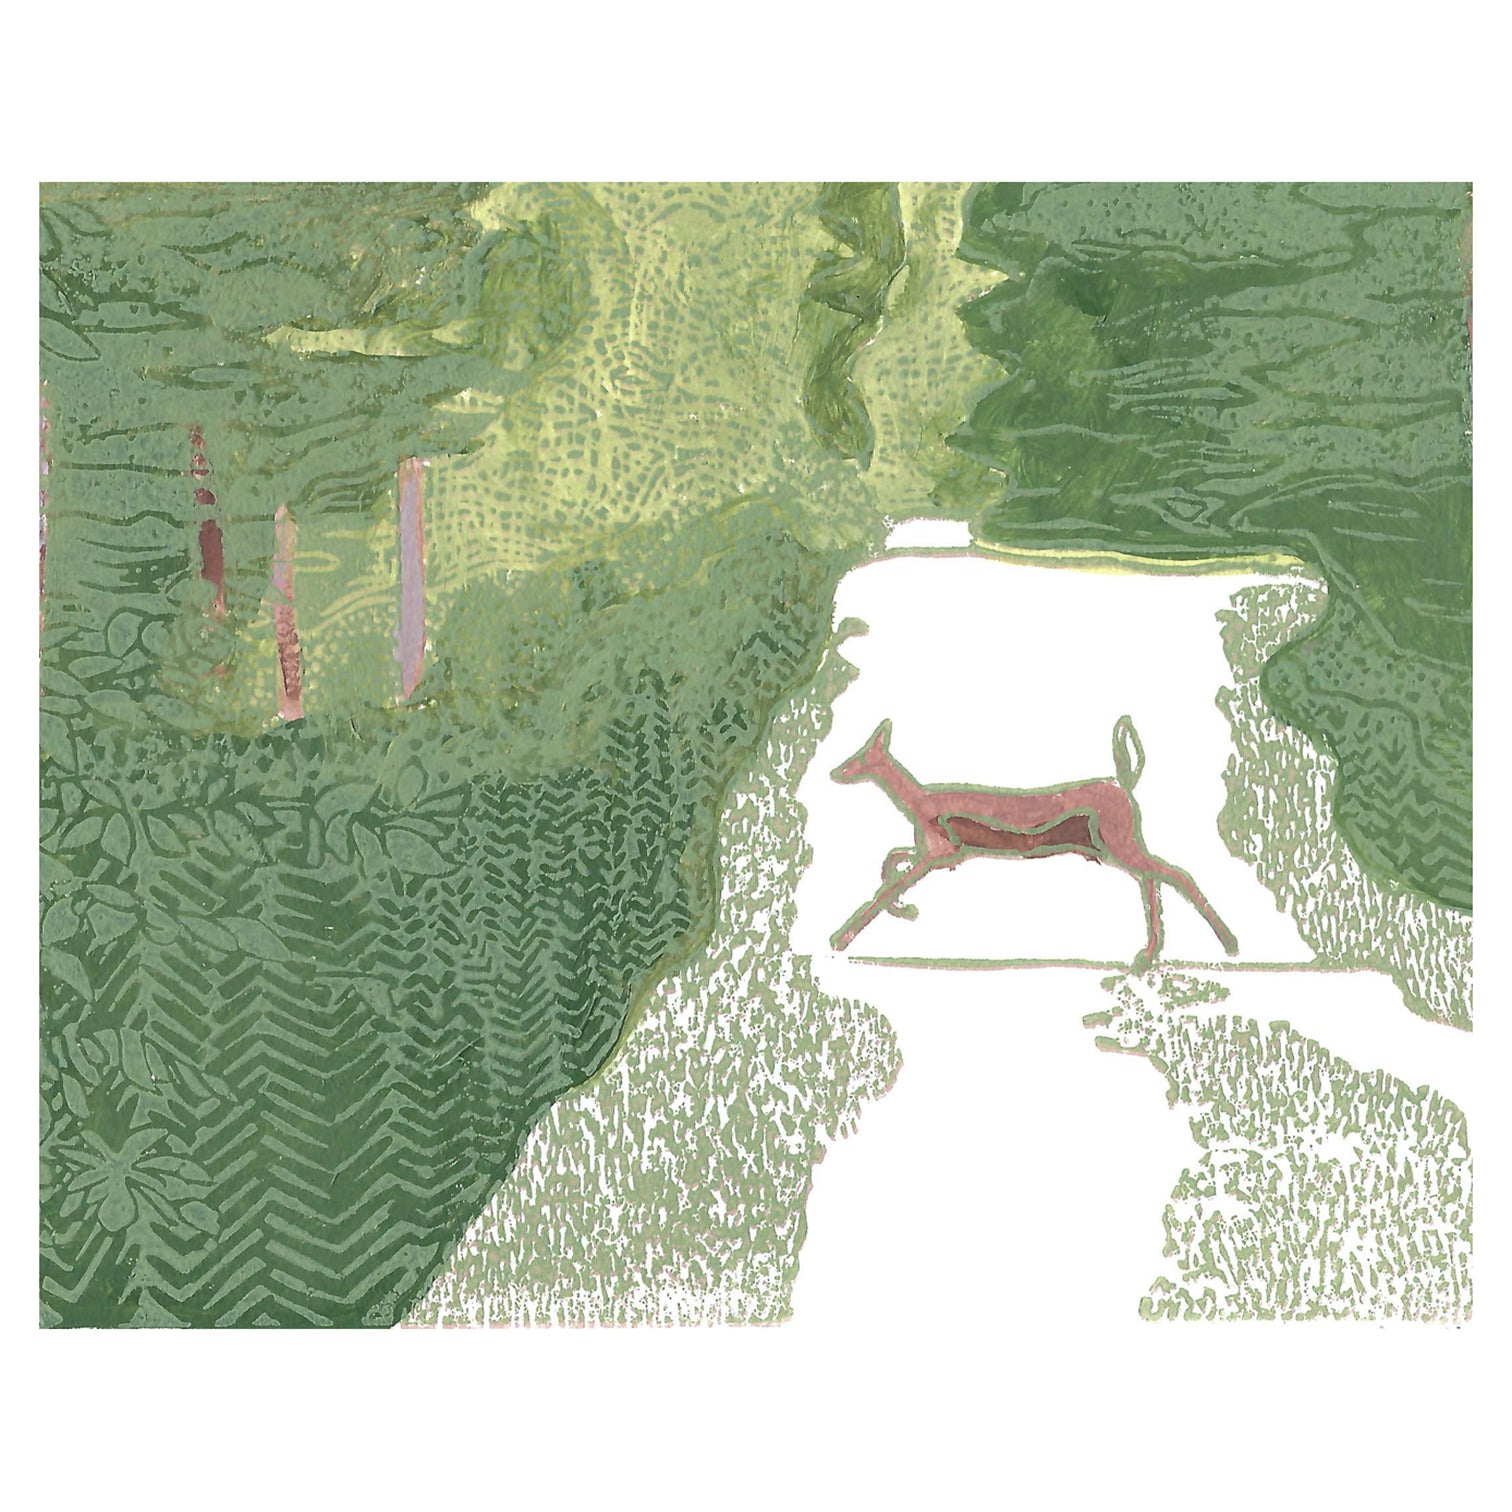 Beautiful deer art by printmaker Natalia Wohletz of Peninsula Prints titled Doe Crossing.